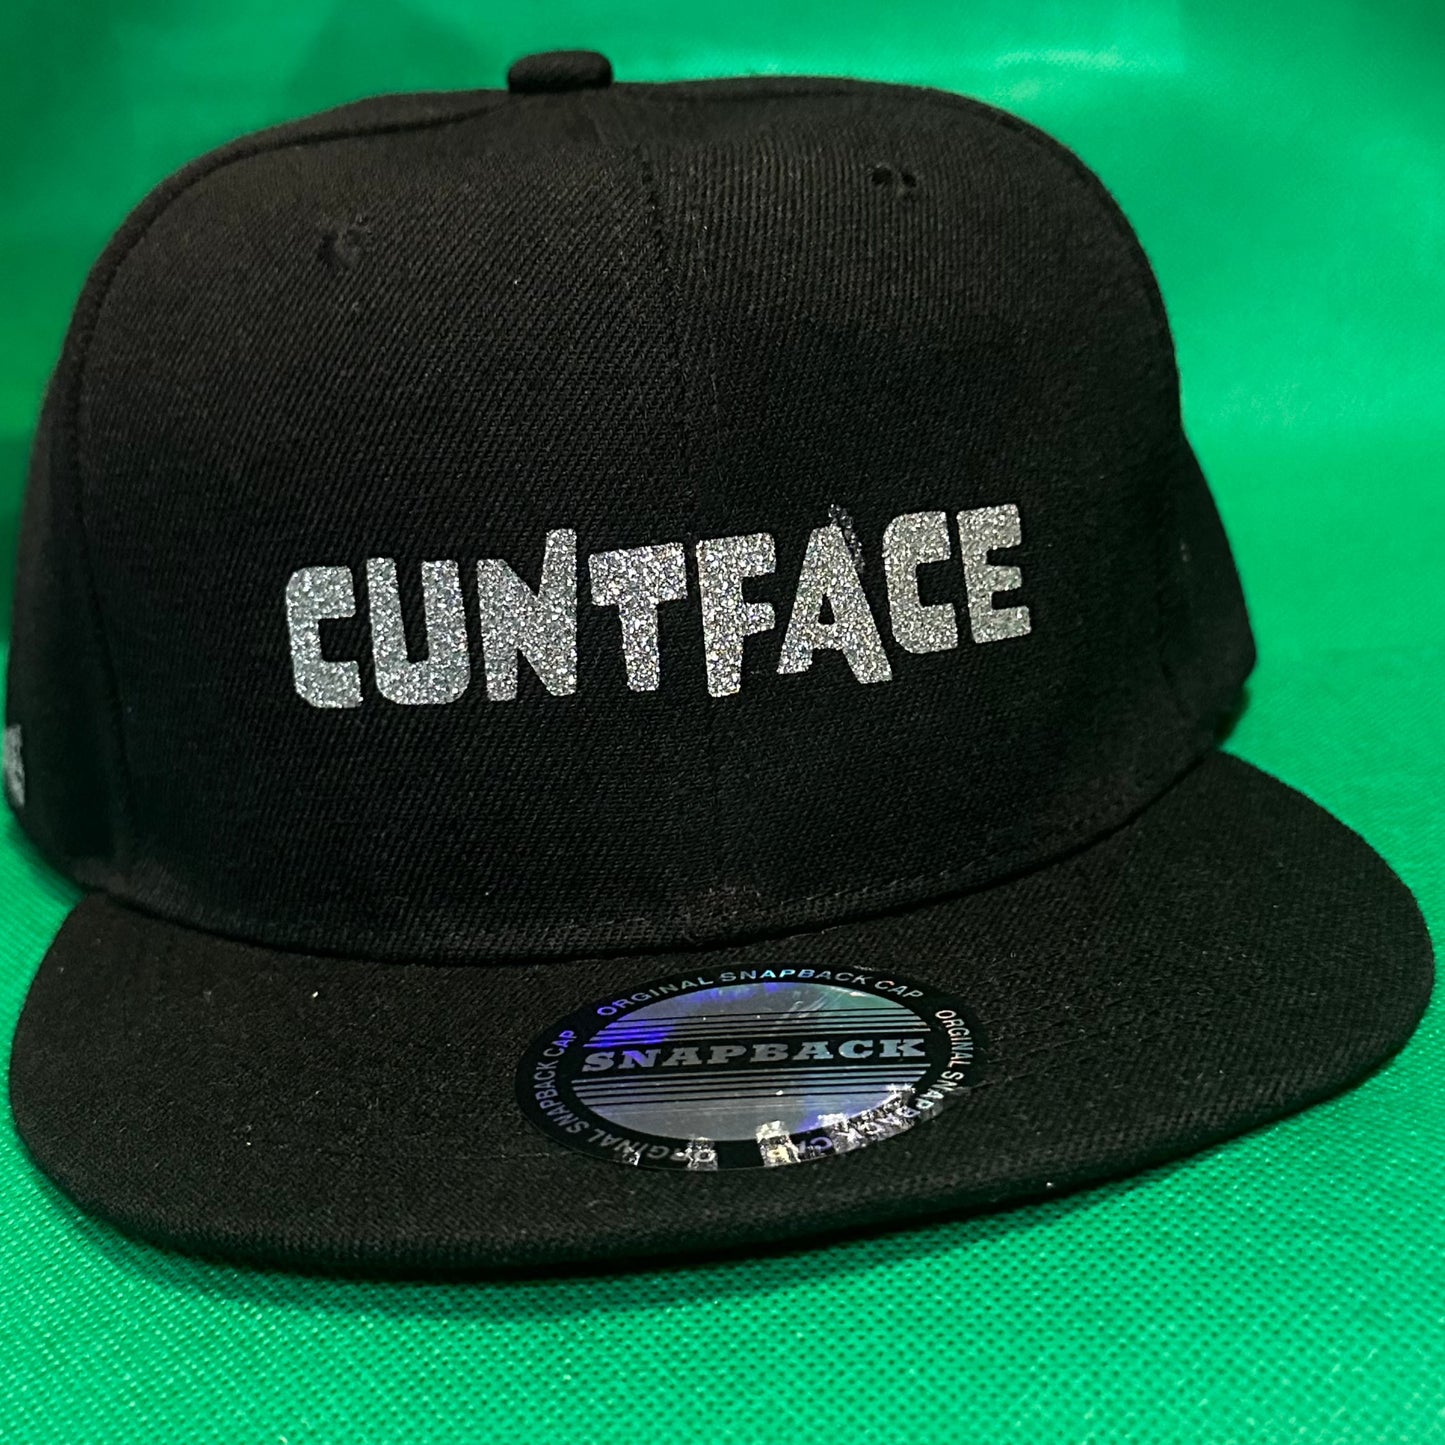 The Cuntface Hat - Flat Brim